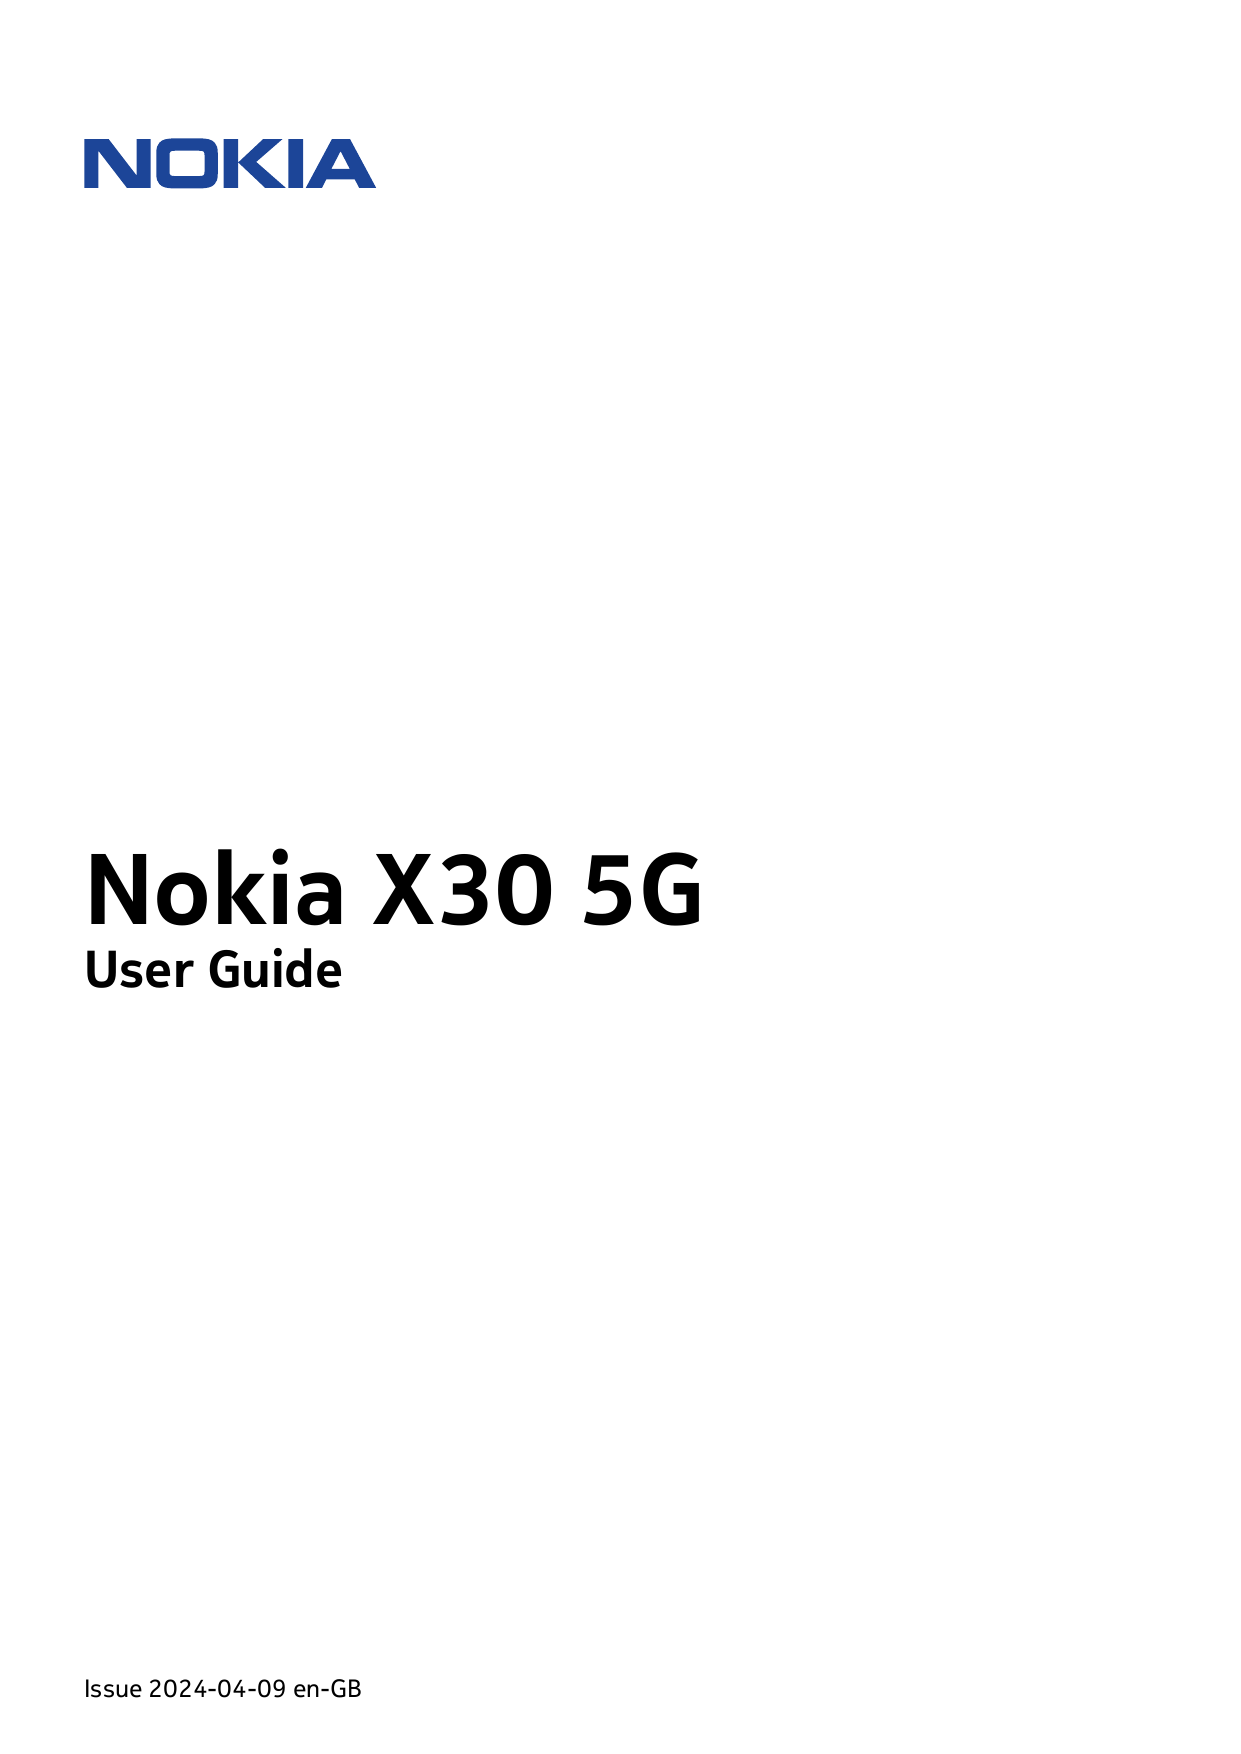 Nokia X30 5GUser GuideIssue 2024-04-09 en-GB